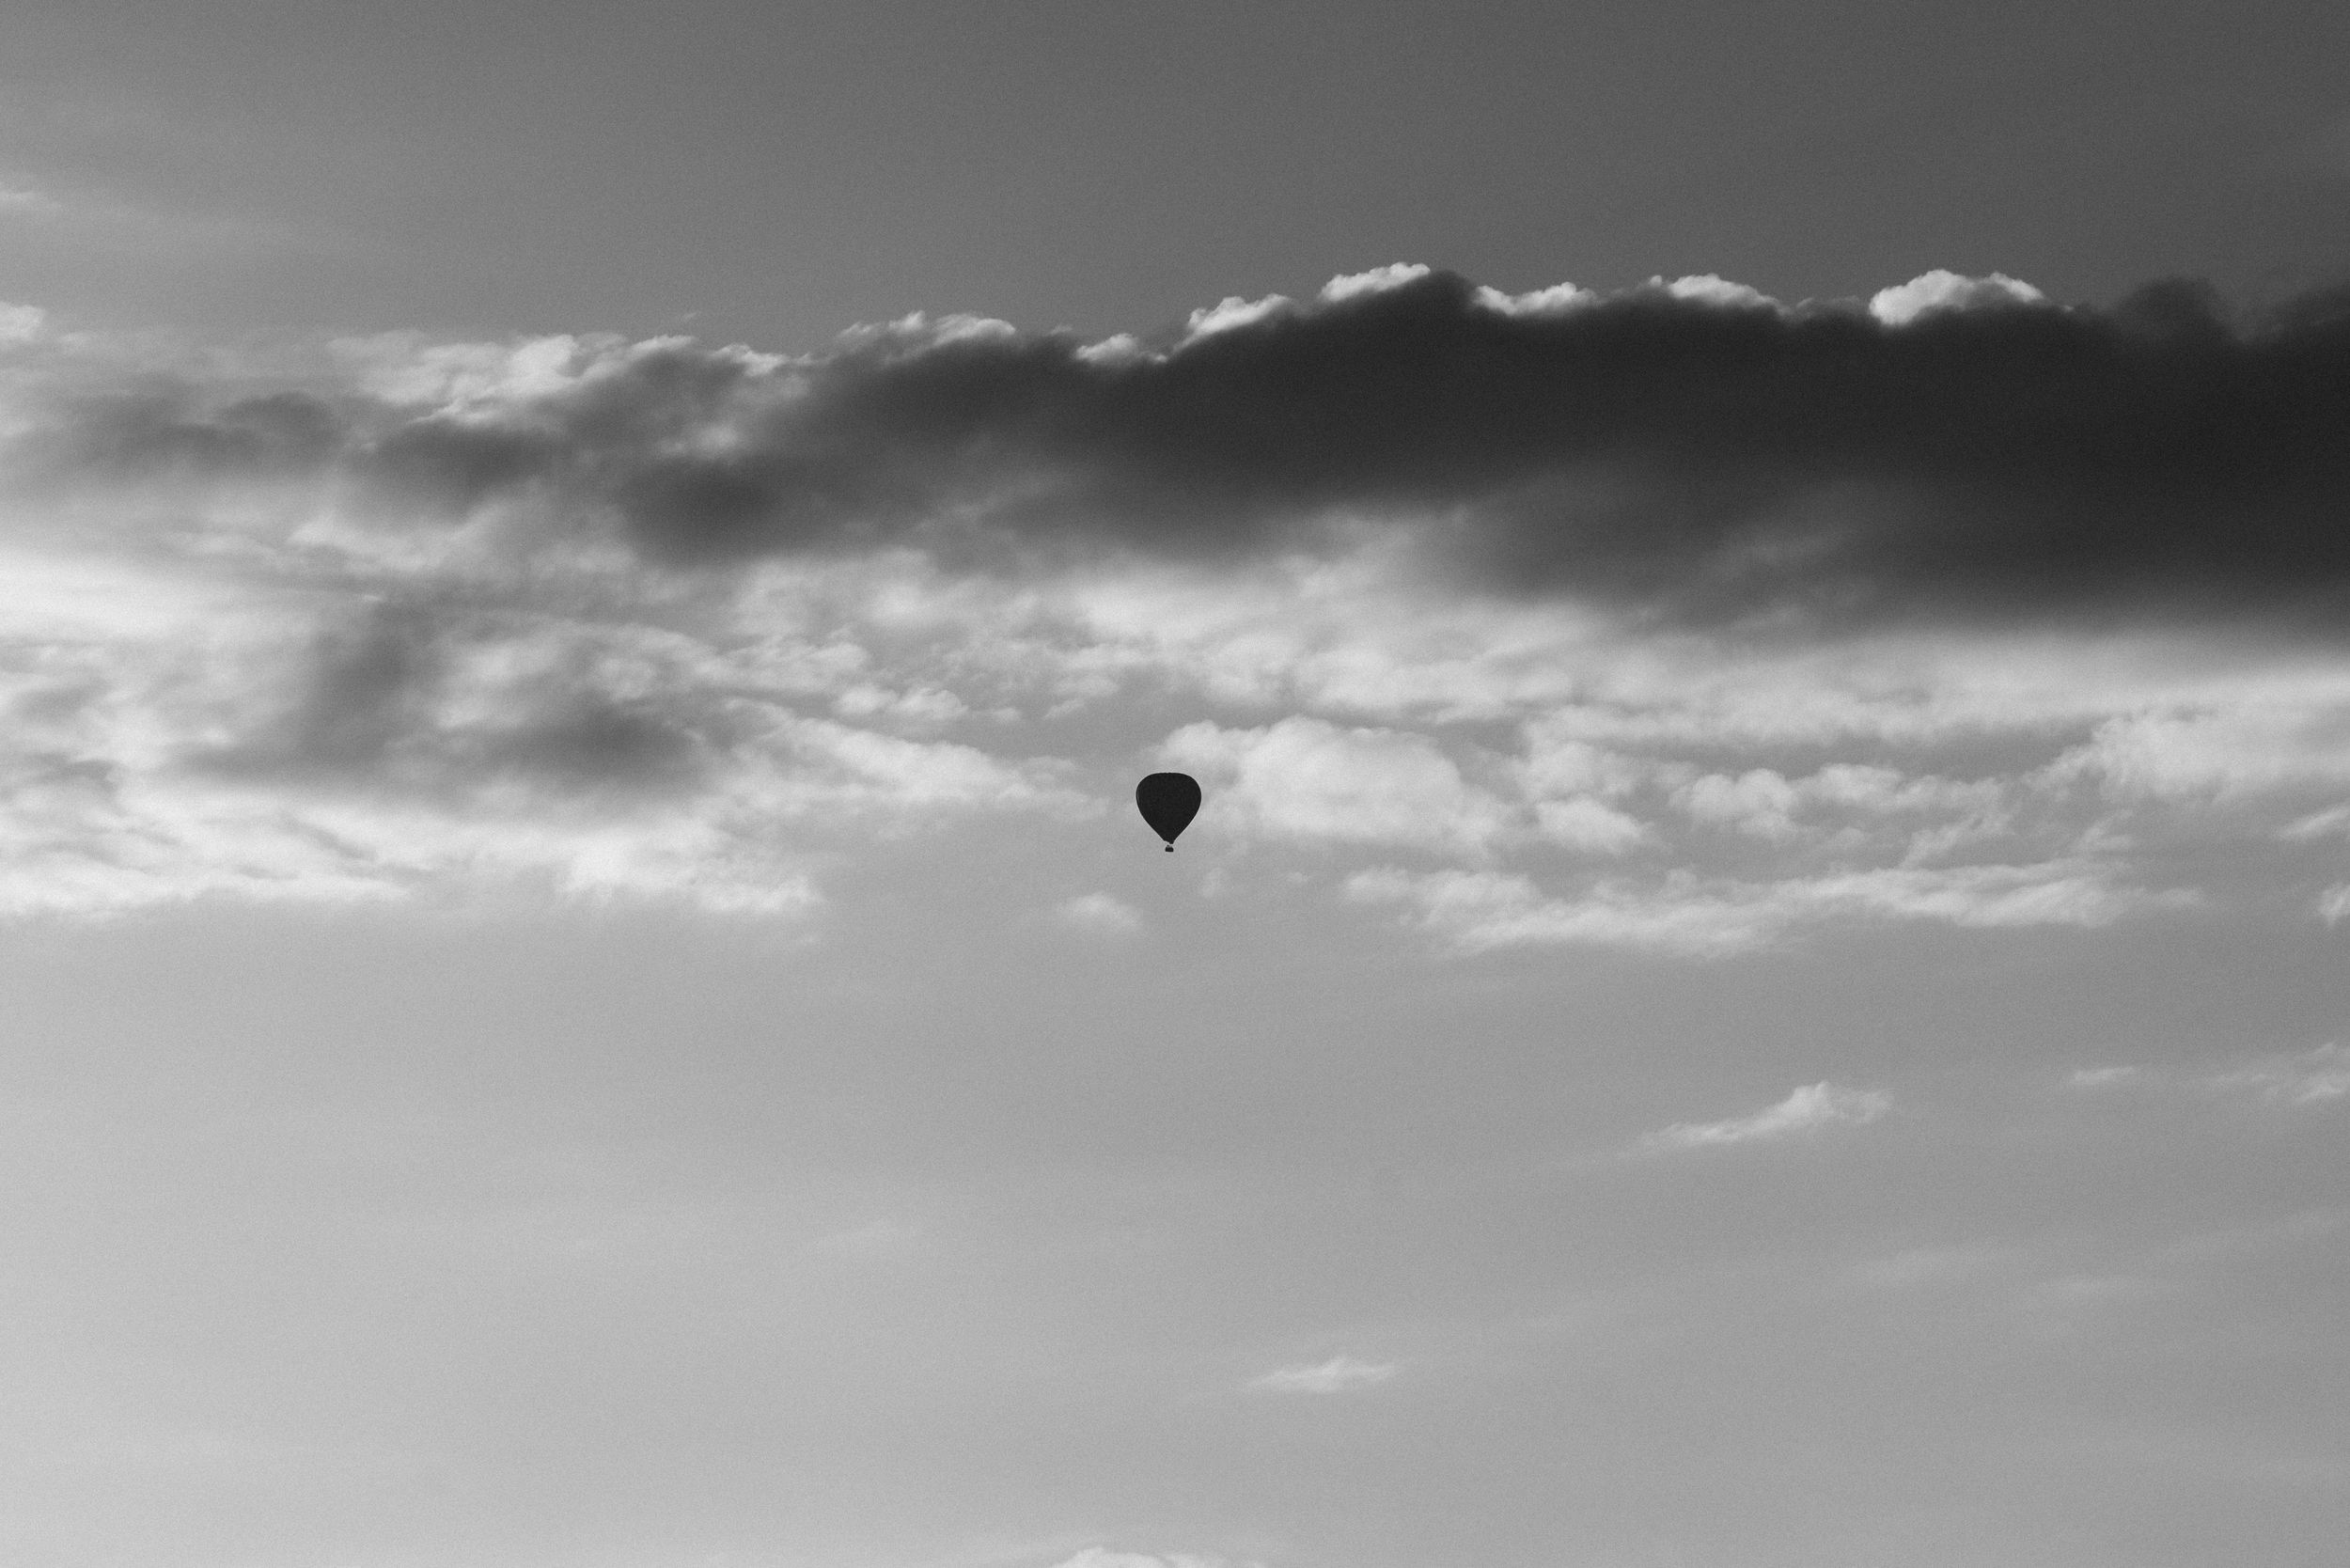 Balloon silhouette, Örnsberg, Stockholm